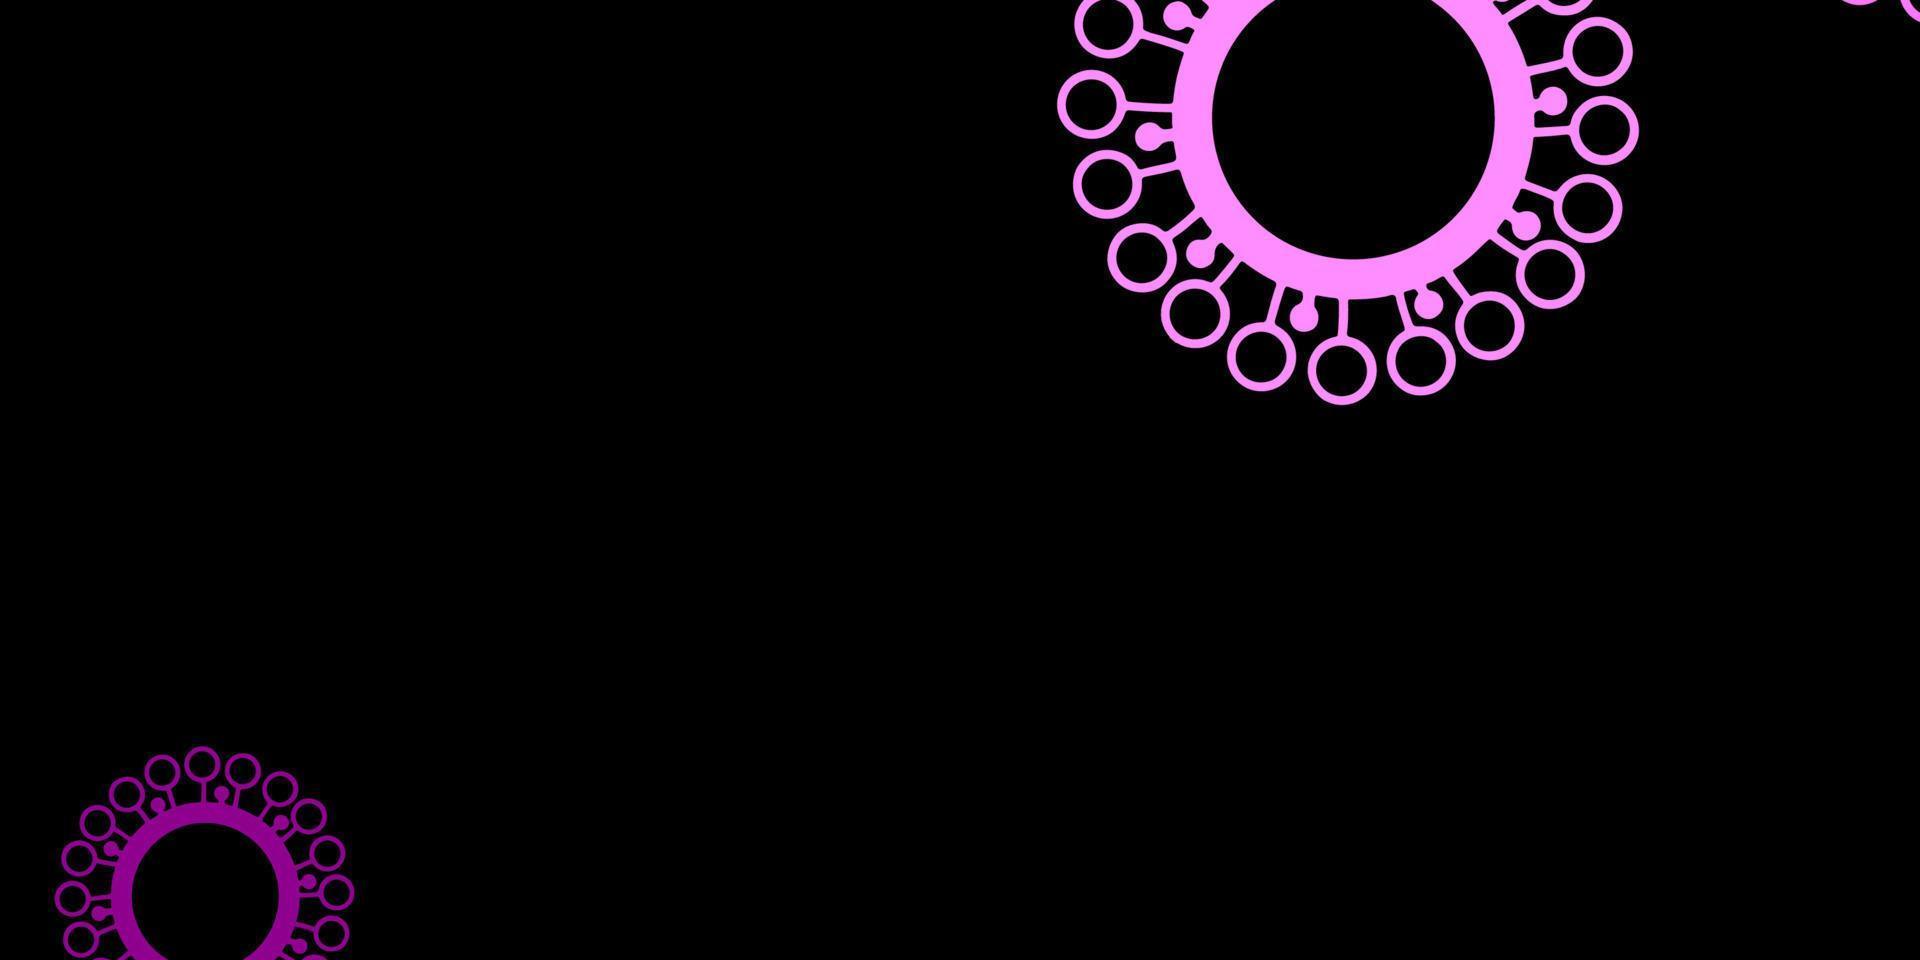 padrão de vetor roxo e rosa escuro com elementos de coronavírus.